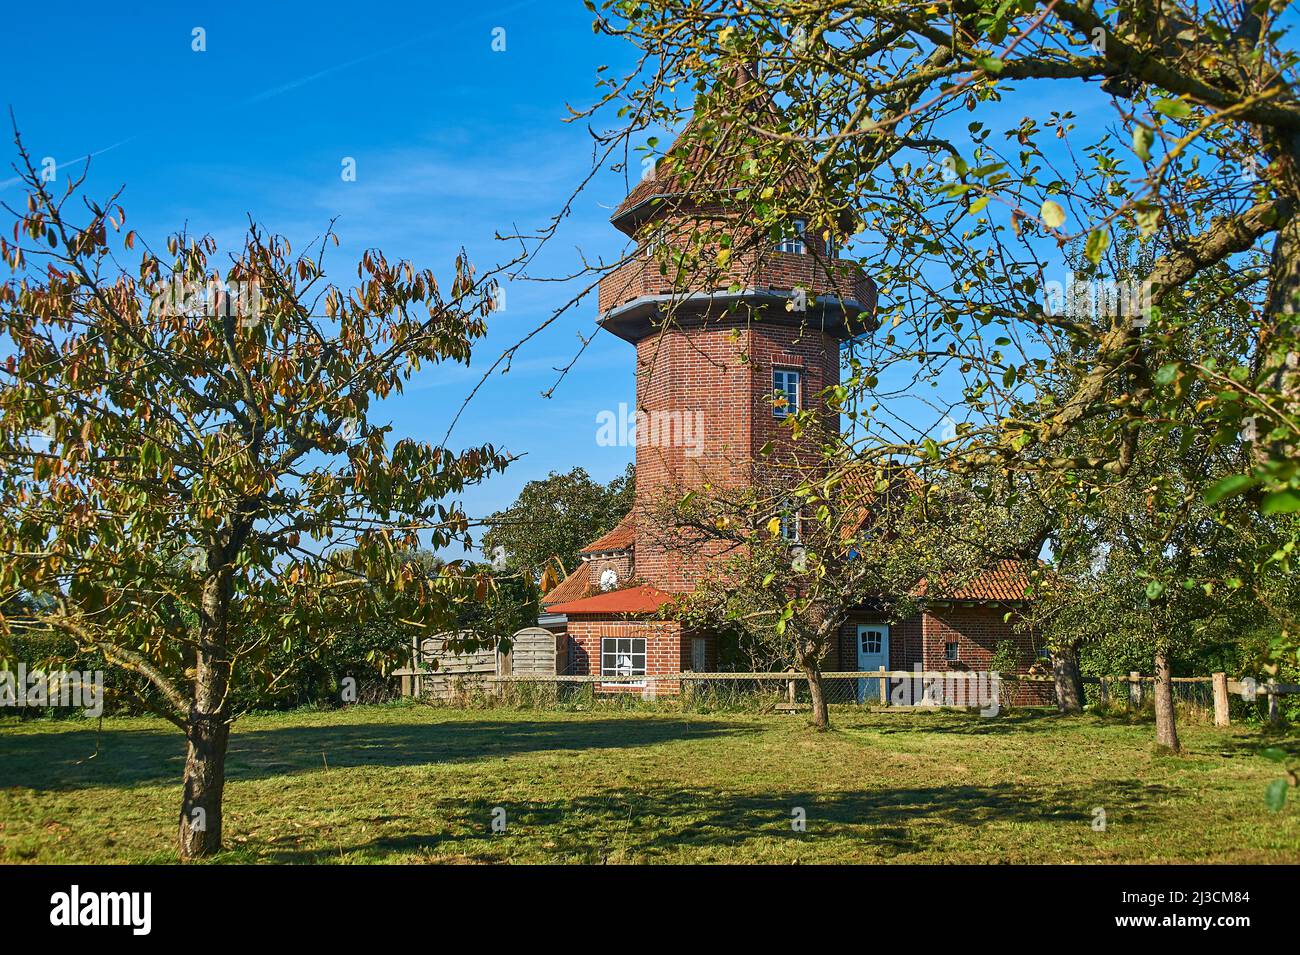 Bâtiment de gardien de phare à Dahmeshöved, dans le nord de l'Allemagne, en Europe Banque D'Images